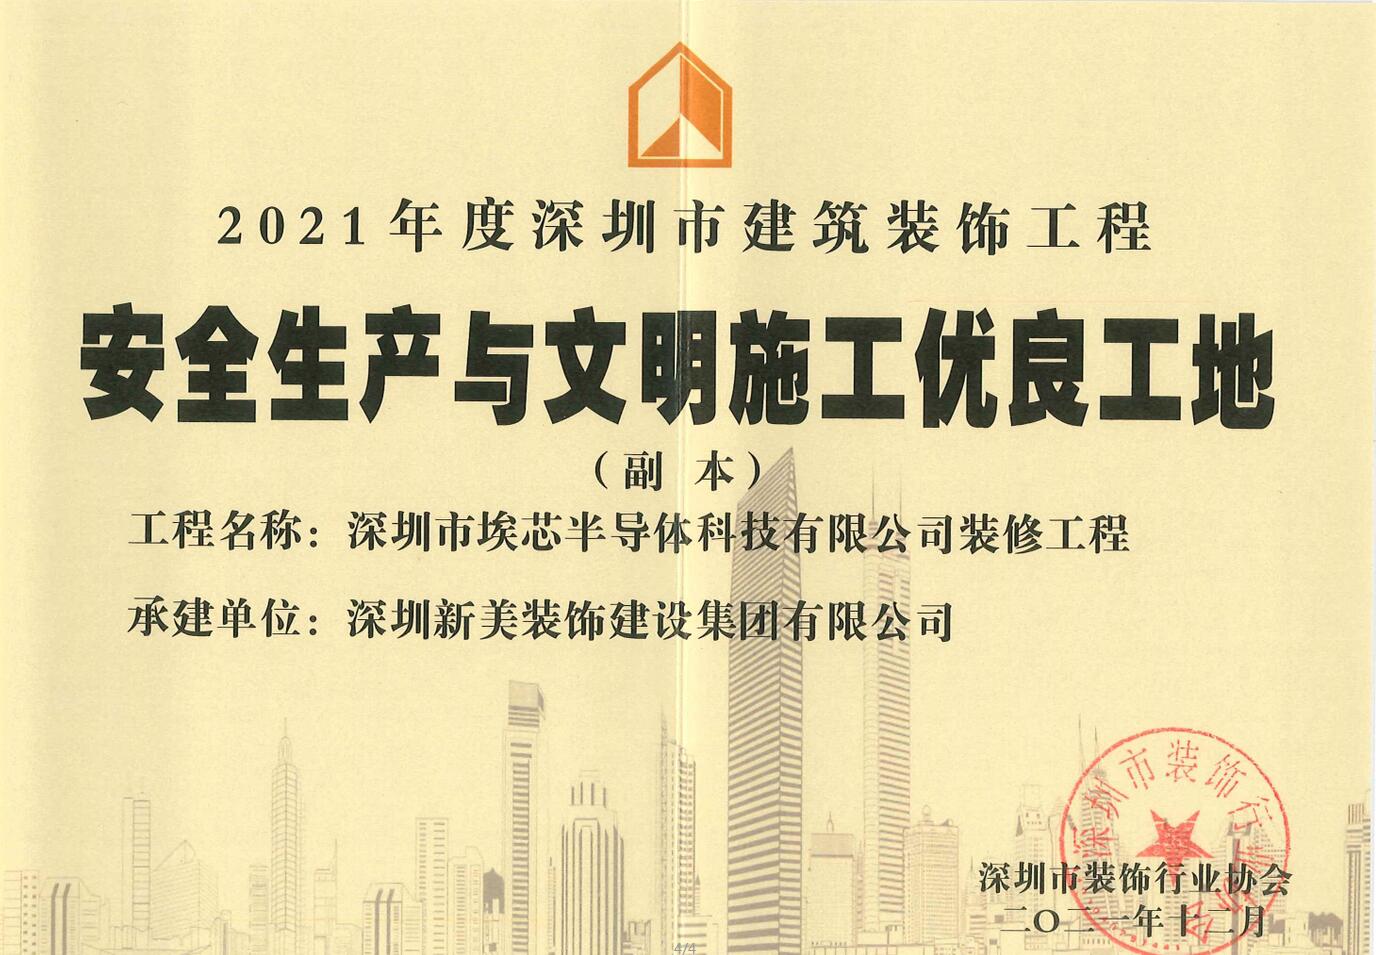 荣誉 | 拼搏体育（中国）股份有限公司集团荣获“2021年度深圳市建筑装饰工程安全生产与文明施工优良工地”称号